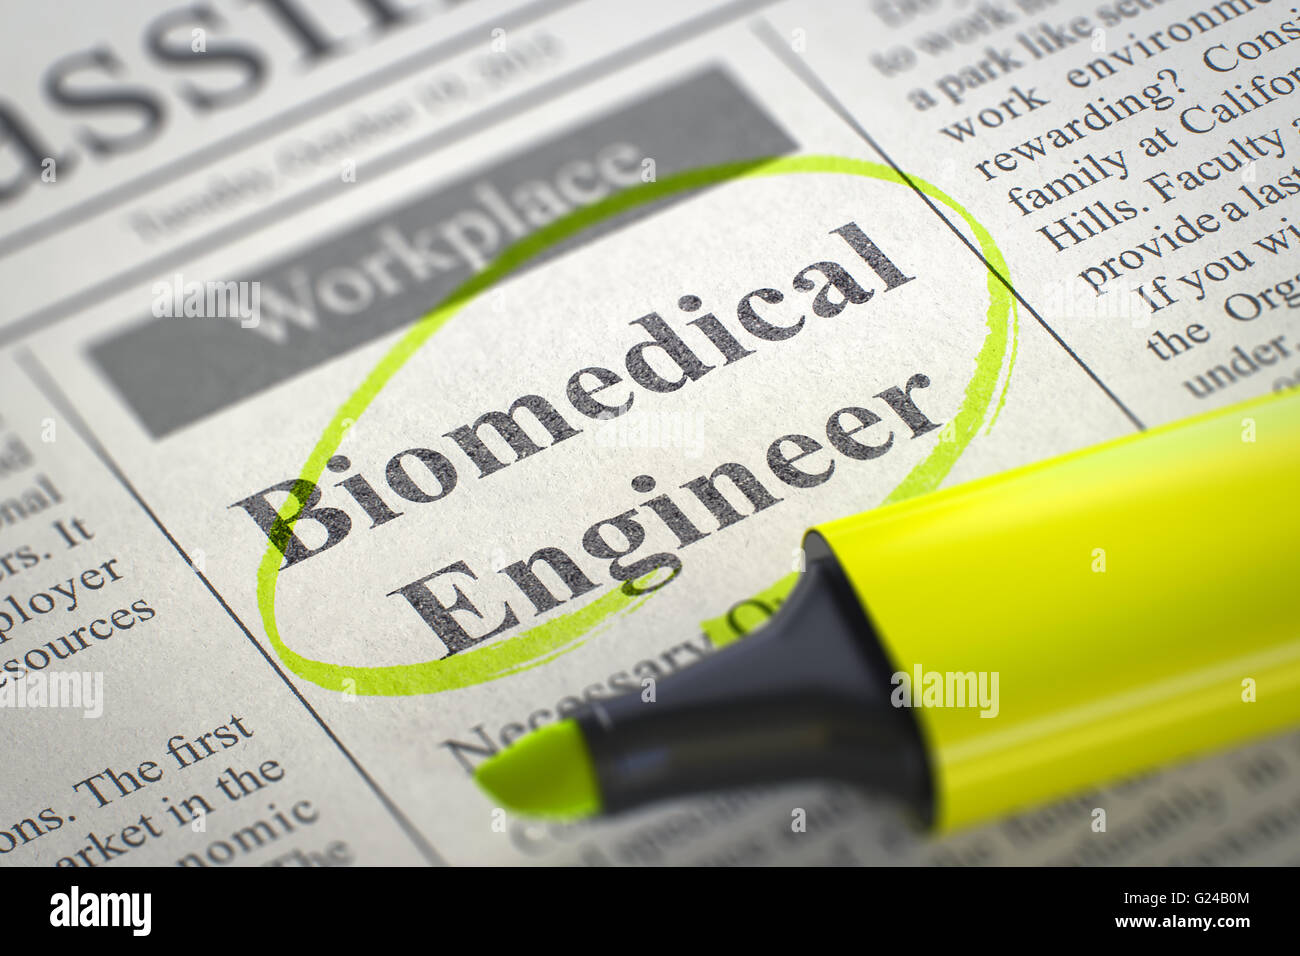 Wir suchen biomedizinischen Ingenieur. Stockfoto